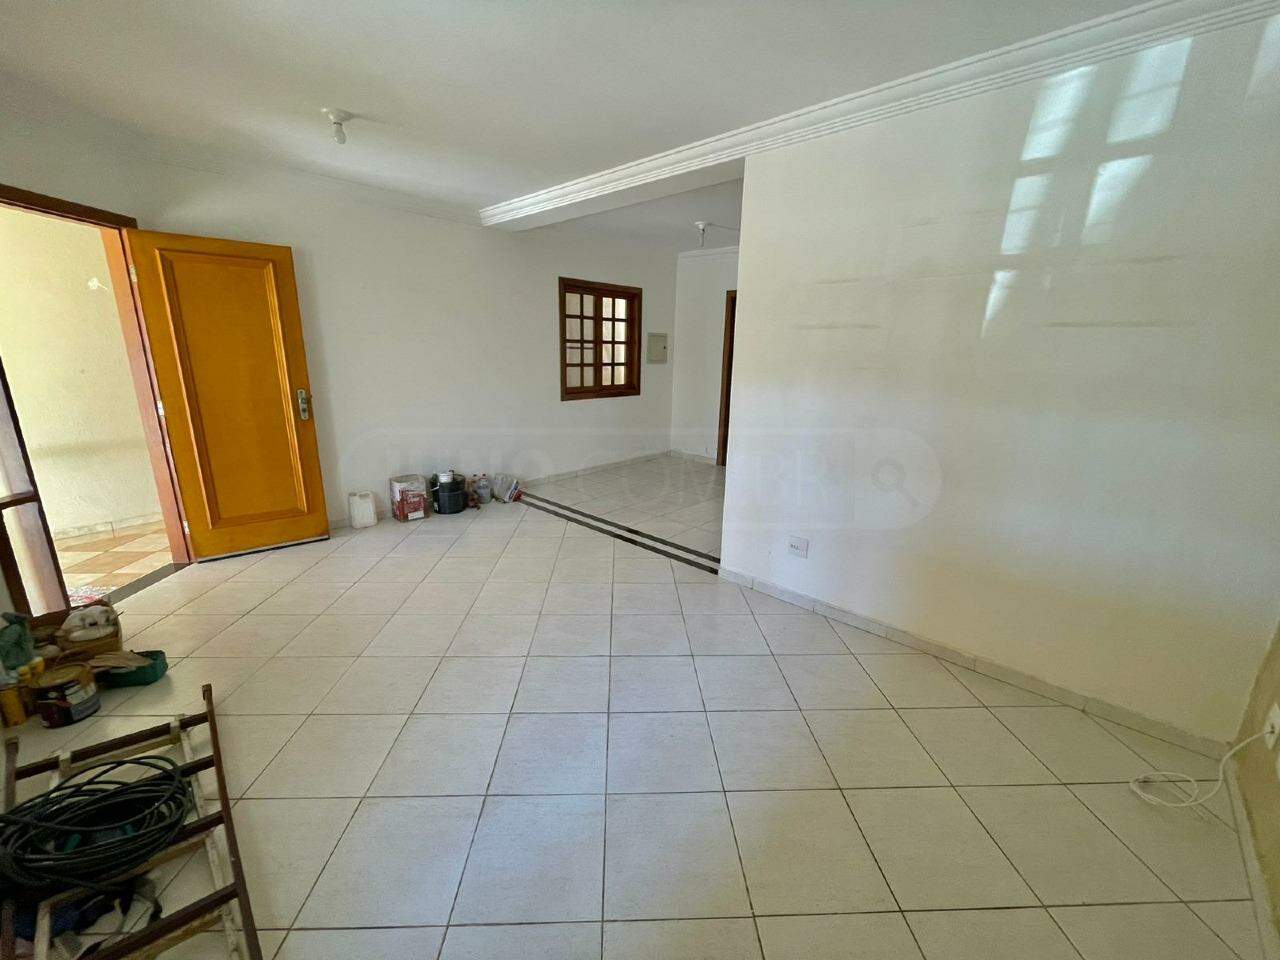 Casa à venda, 3 quartos, sendo 1 suíte, 2 vagas, no bairro Pombeva em Piracicaba - SP